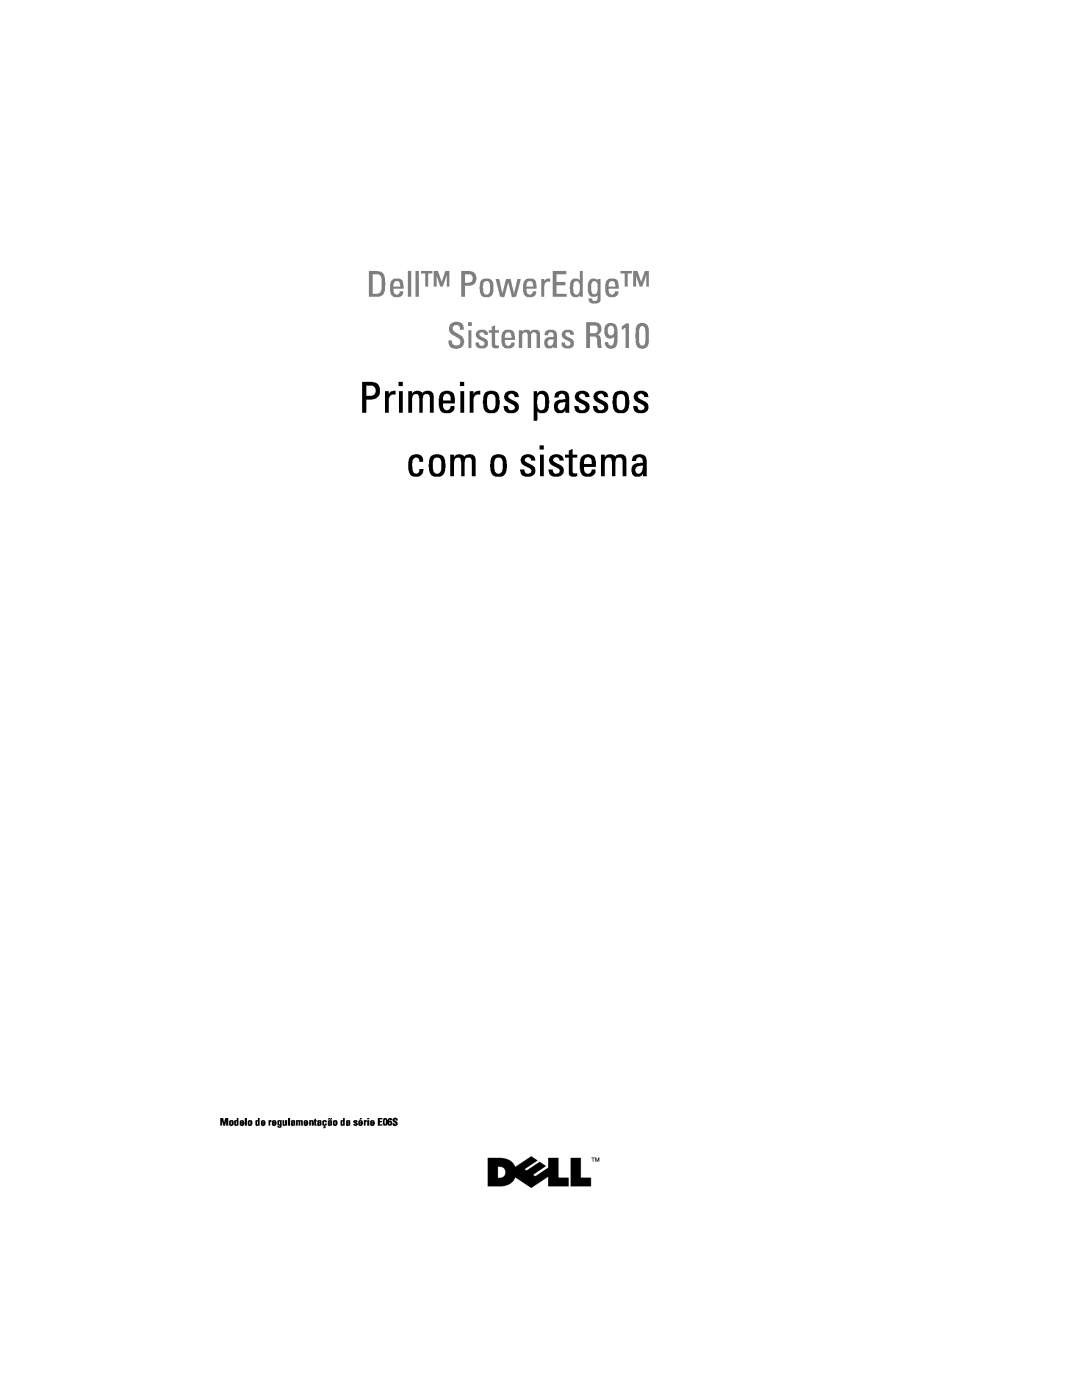 Dell manual Primeiros passos com o sistema, Dell PowerEdge Sistemas R910, Modelo de regulamentação da série E06S 